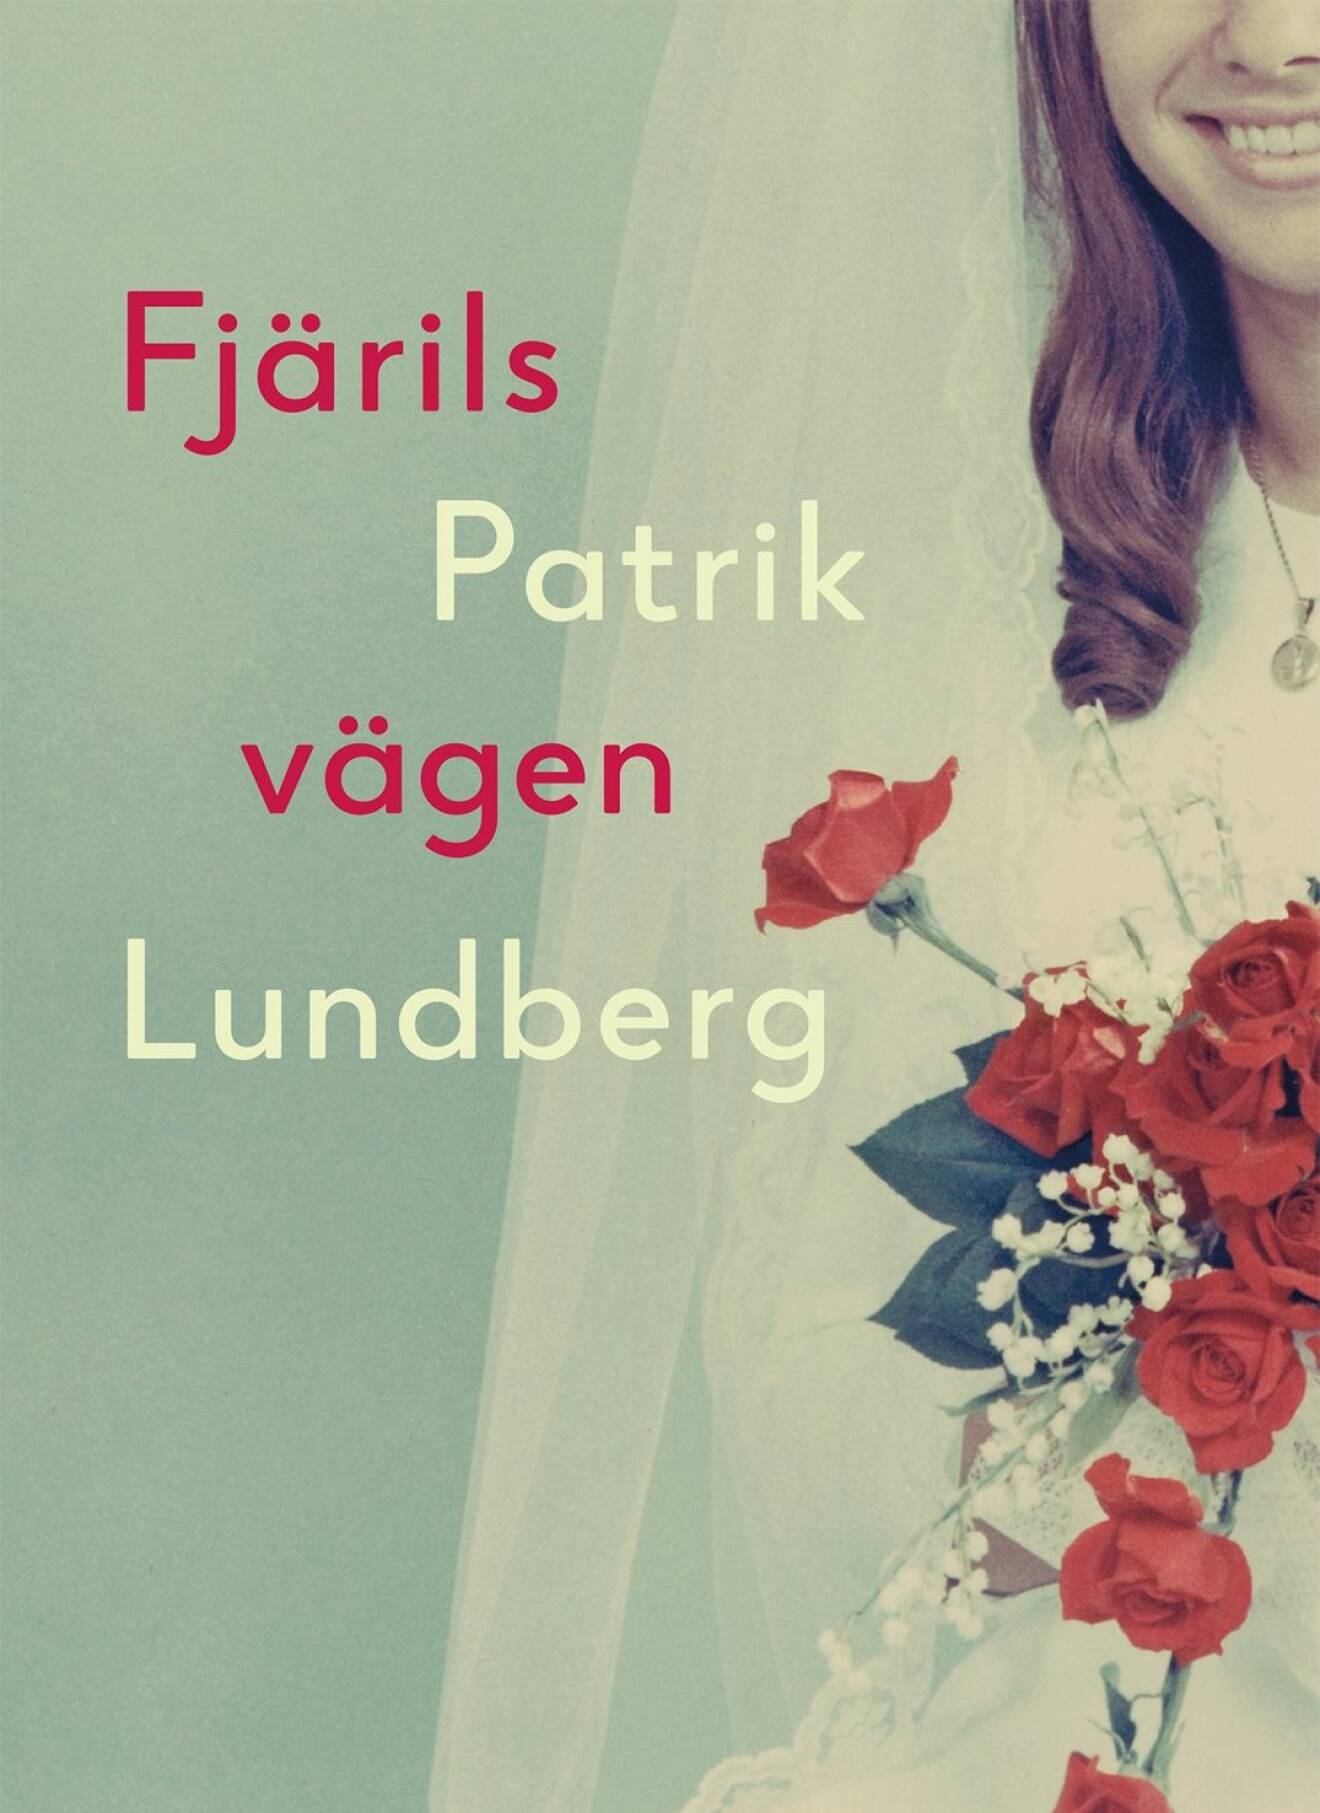 Omslaget till Patrik Lundbergs bok Fjärilsvägen.